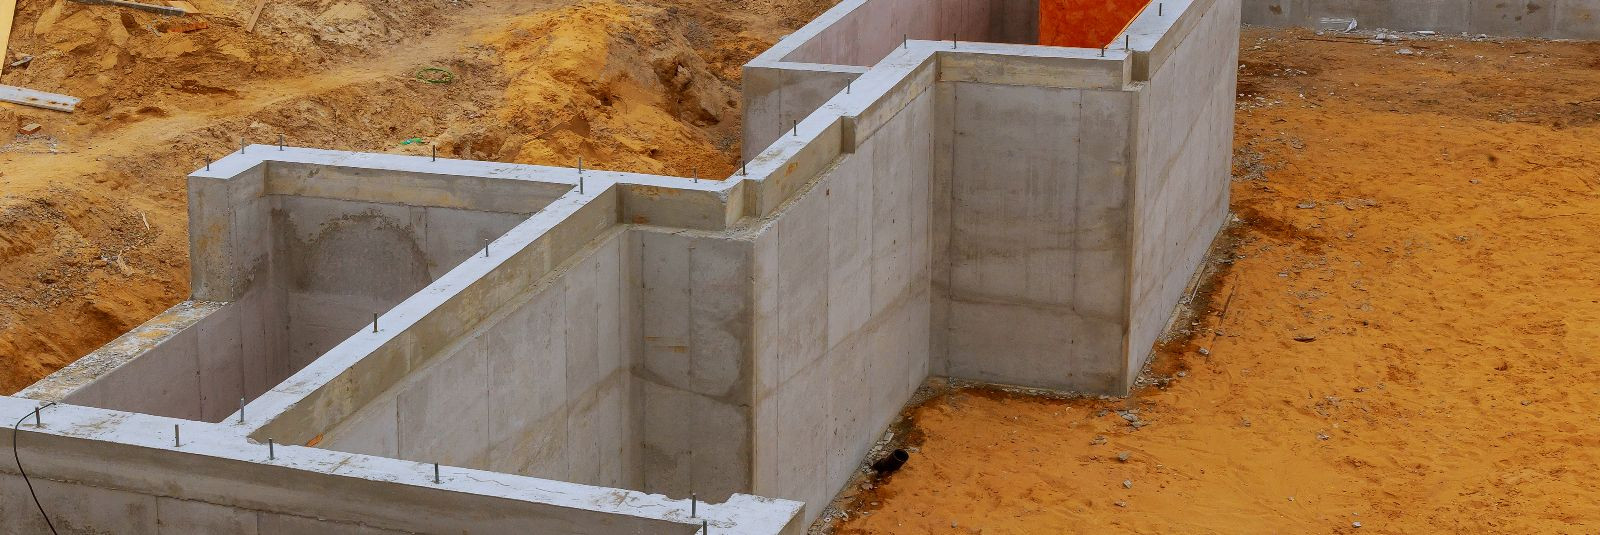 Betoonitööd on ehitusvaldkonnas üks olulisemaid ja laialdasemalt kasutatavaid ehitustehnikaid, mida rakendatakse mitmesugustes ehitusprojektides, alates elamute